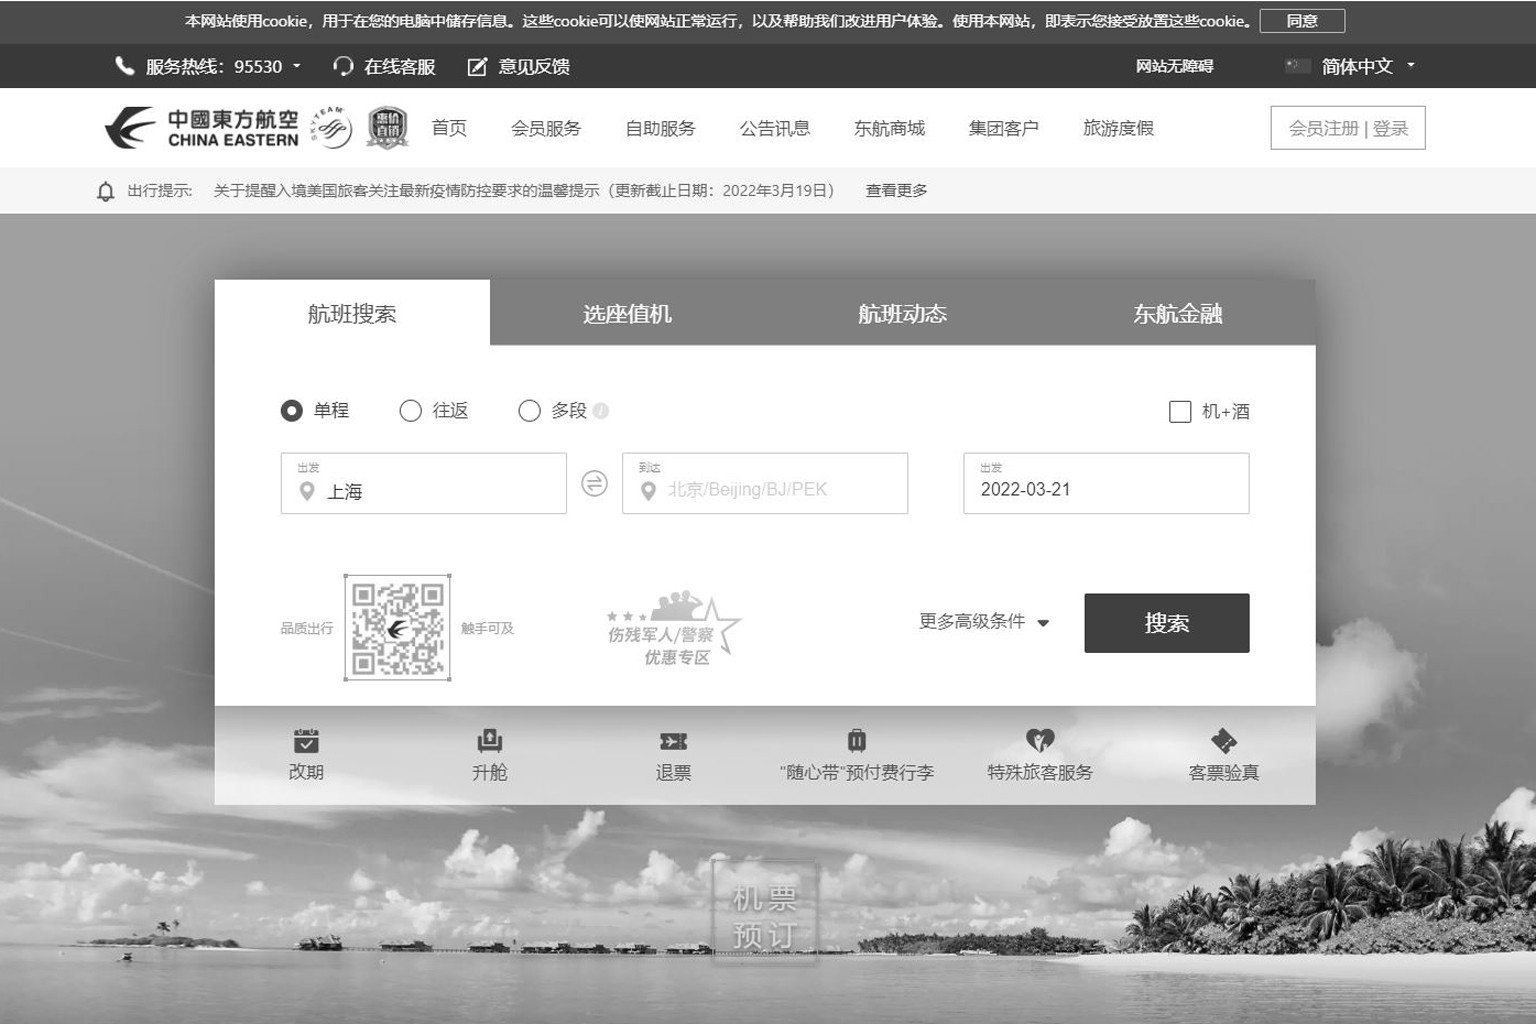 Trang web của China Eastern Airlines sau đó được chuyển sang hai màu đen và trắng, 